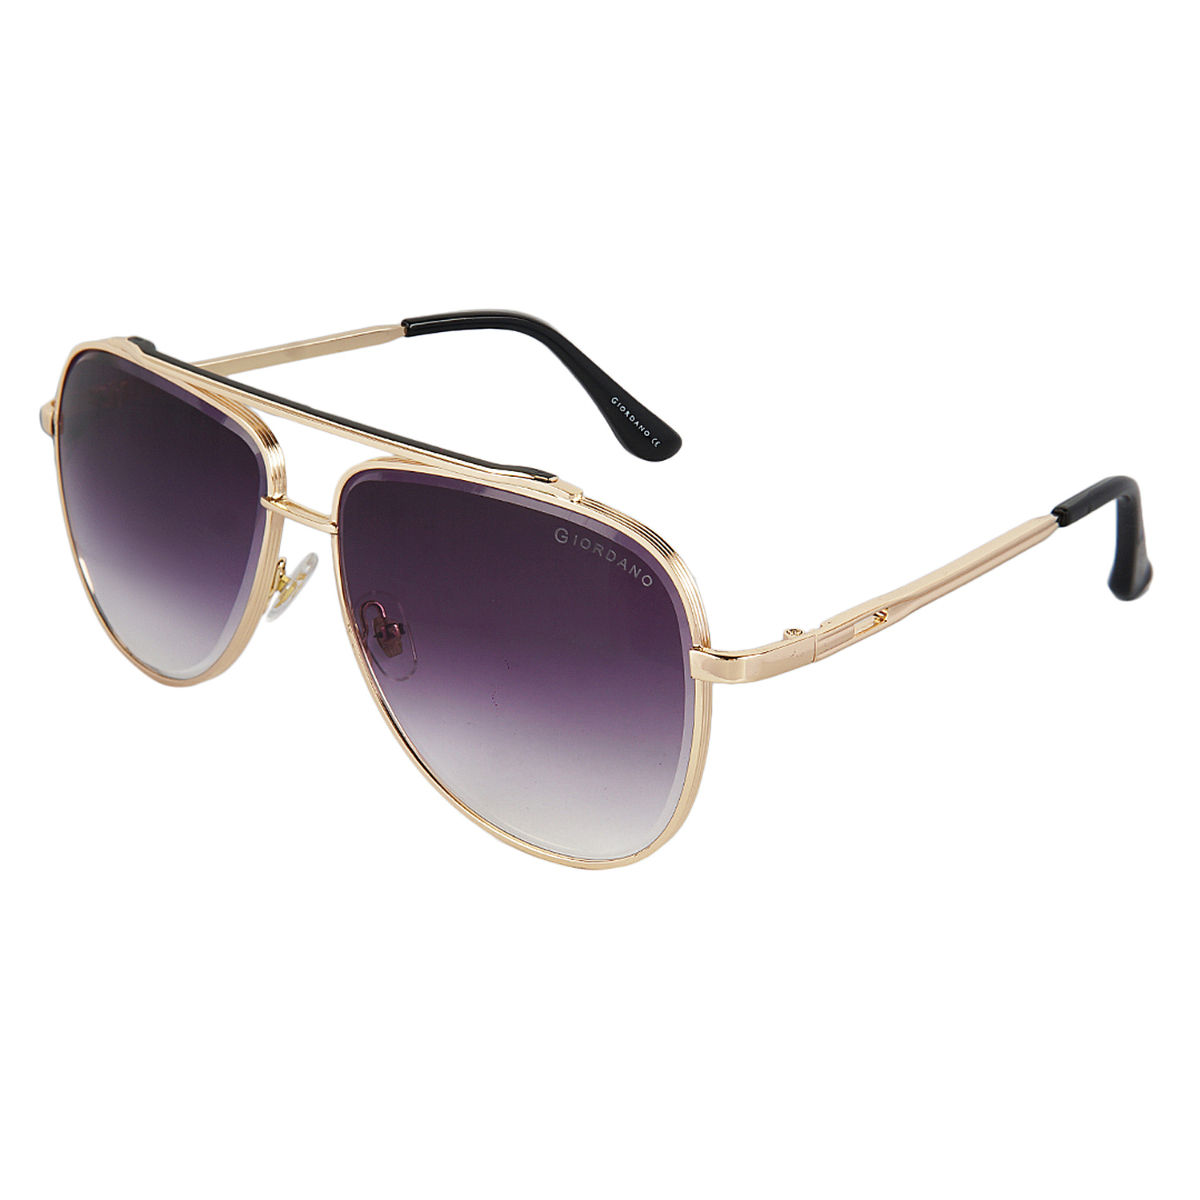 Buy Giordano Polarized Sunglasses Uv Protected Use for Men - Ga90320C03  (57) Online